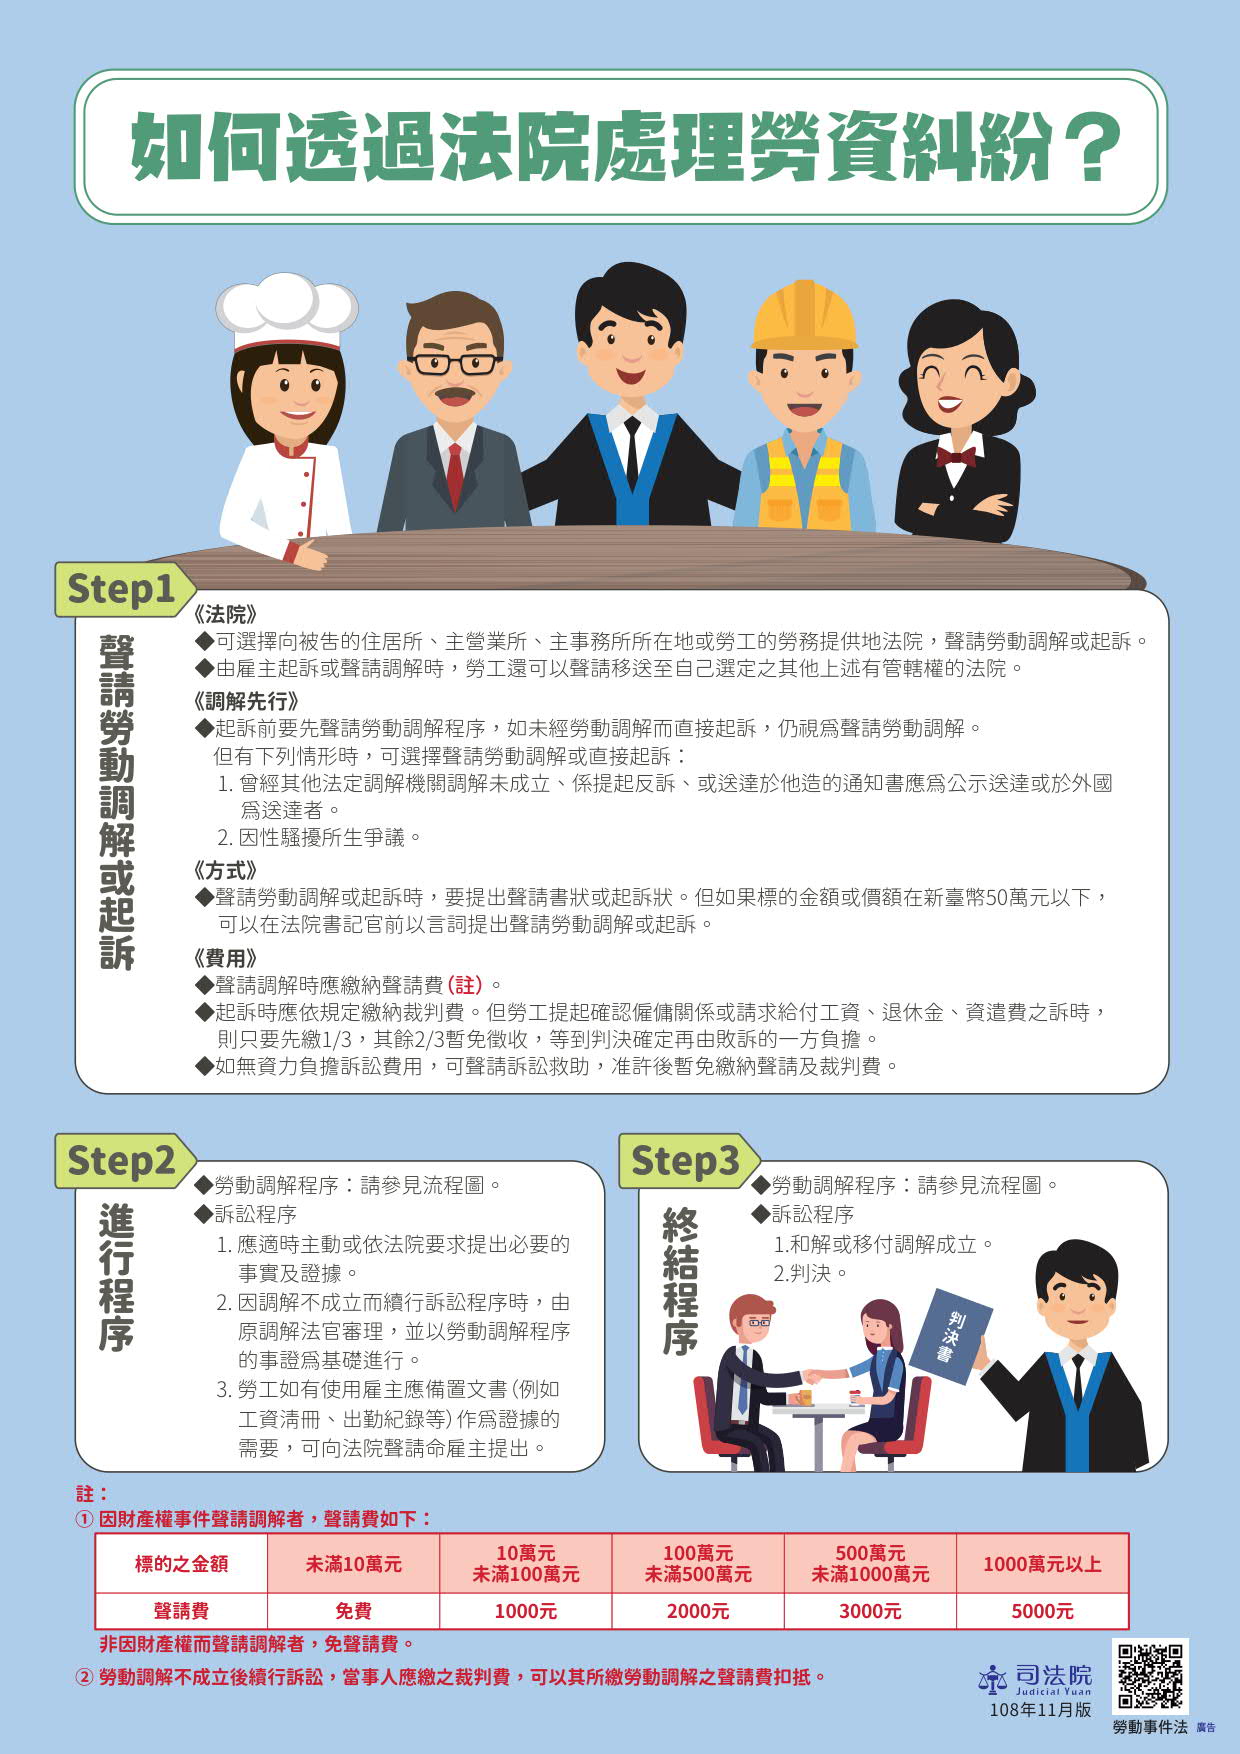 Viện Tư pháp Đài Loan đã cho ra mắt poster “Mở rộng tuyên truyền luật Tố tụng lao động” bằng 5 thứ tiếng bao gồm tiếng Trung, tiếng Anh, tiếng Thái, tiếng Việt và tiếng Indonesia. (Nguồn ảnh: Viện Tư pháp Đài Loan)